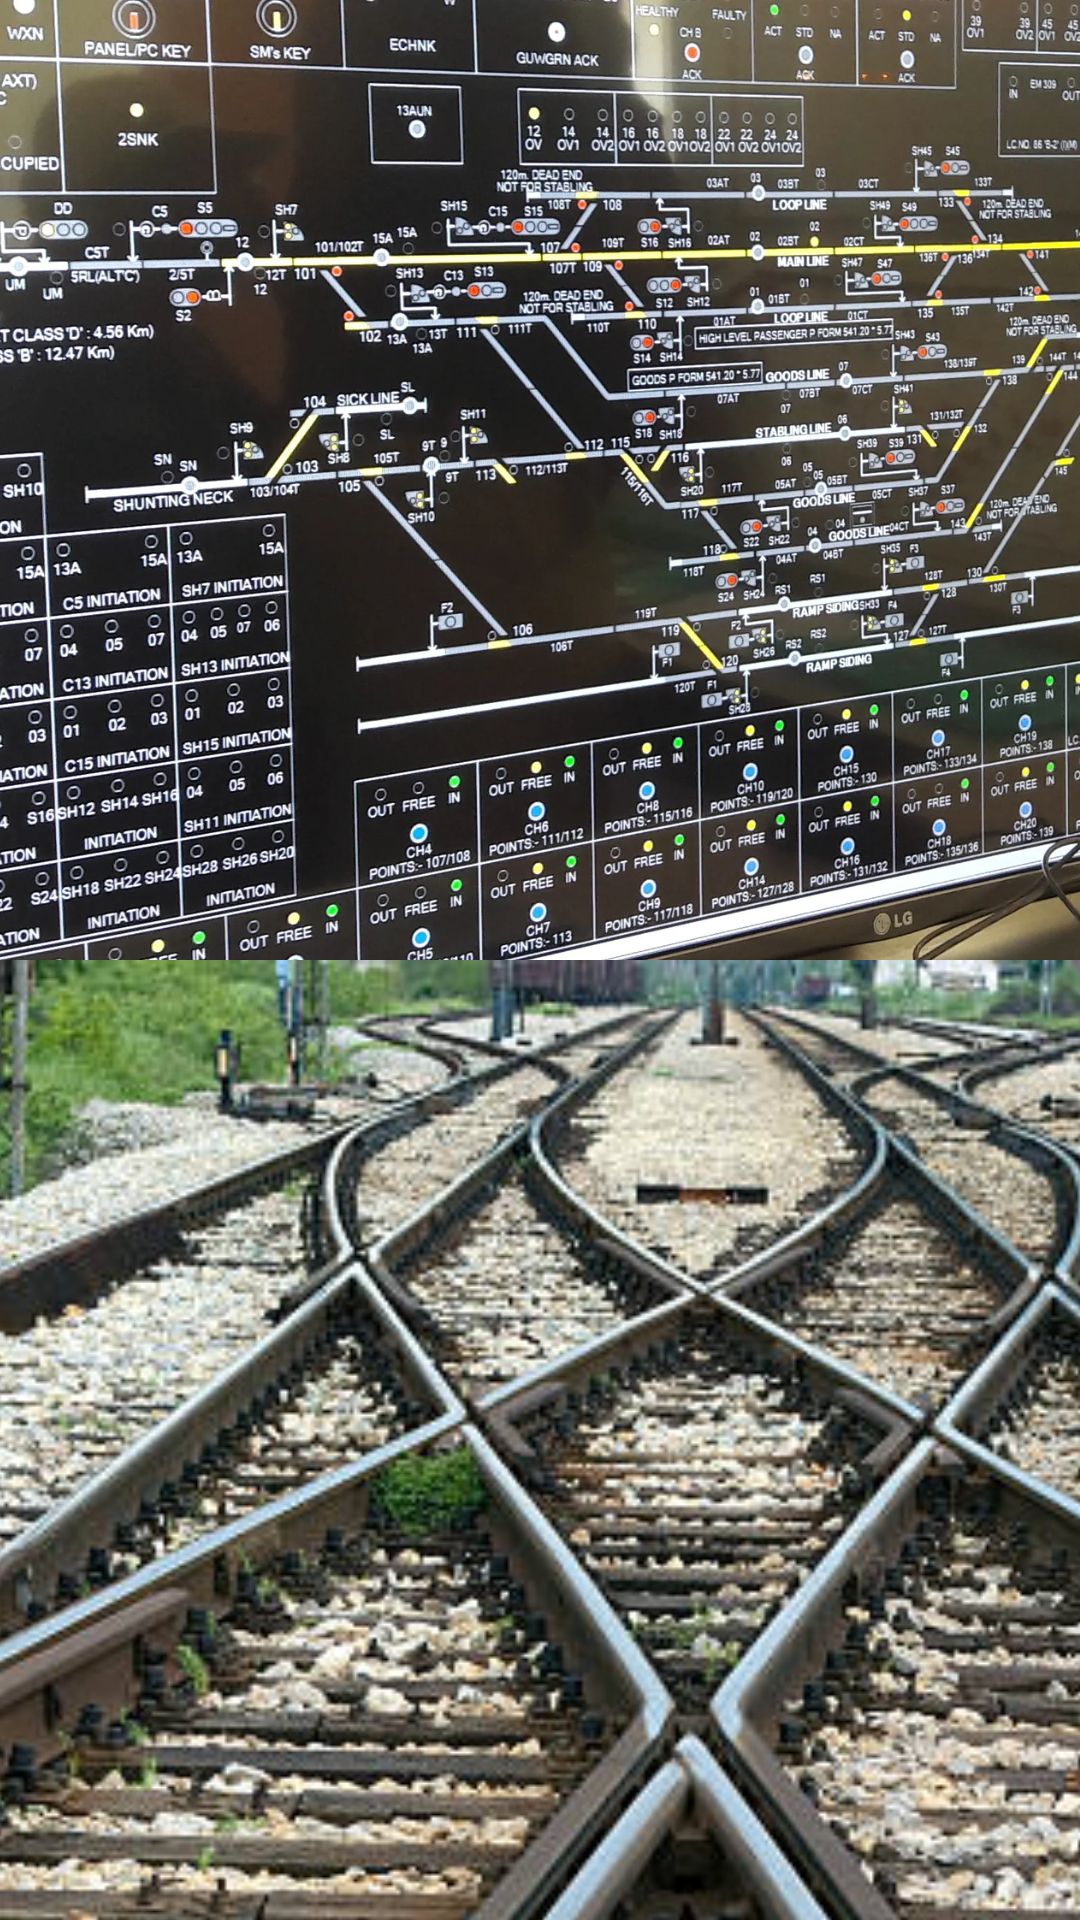 रेलवे में क्या होता है इलेक्ट्रॉनिक इंटरलॉकिंग सिस्टम?